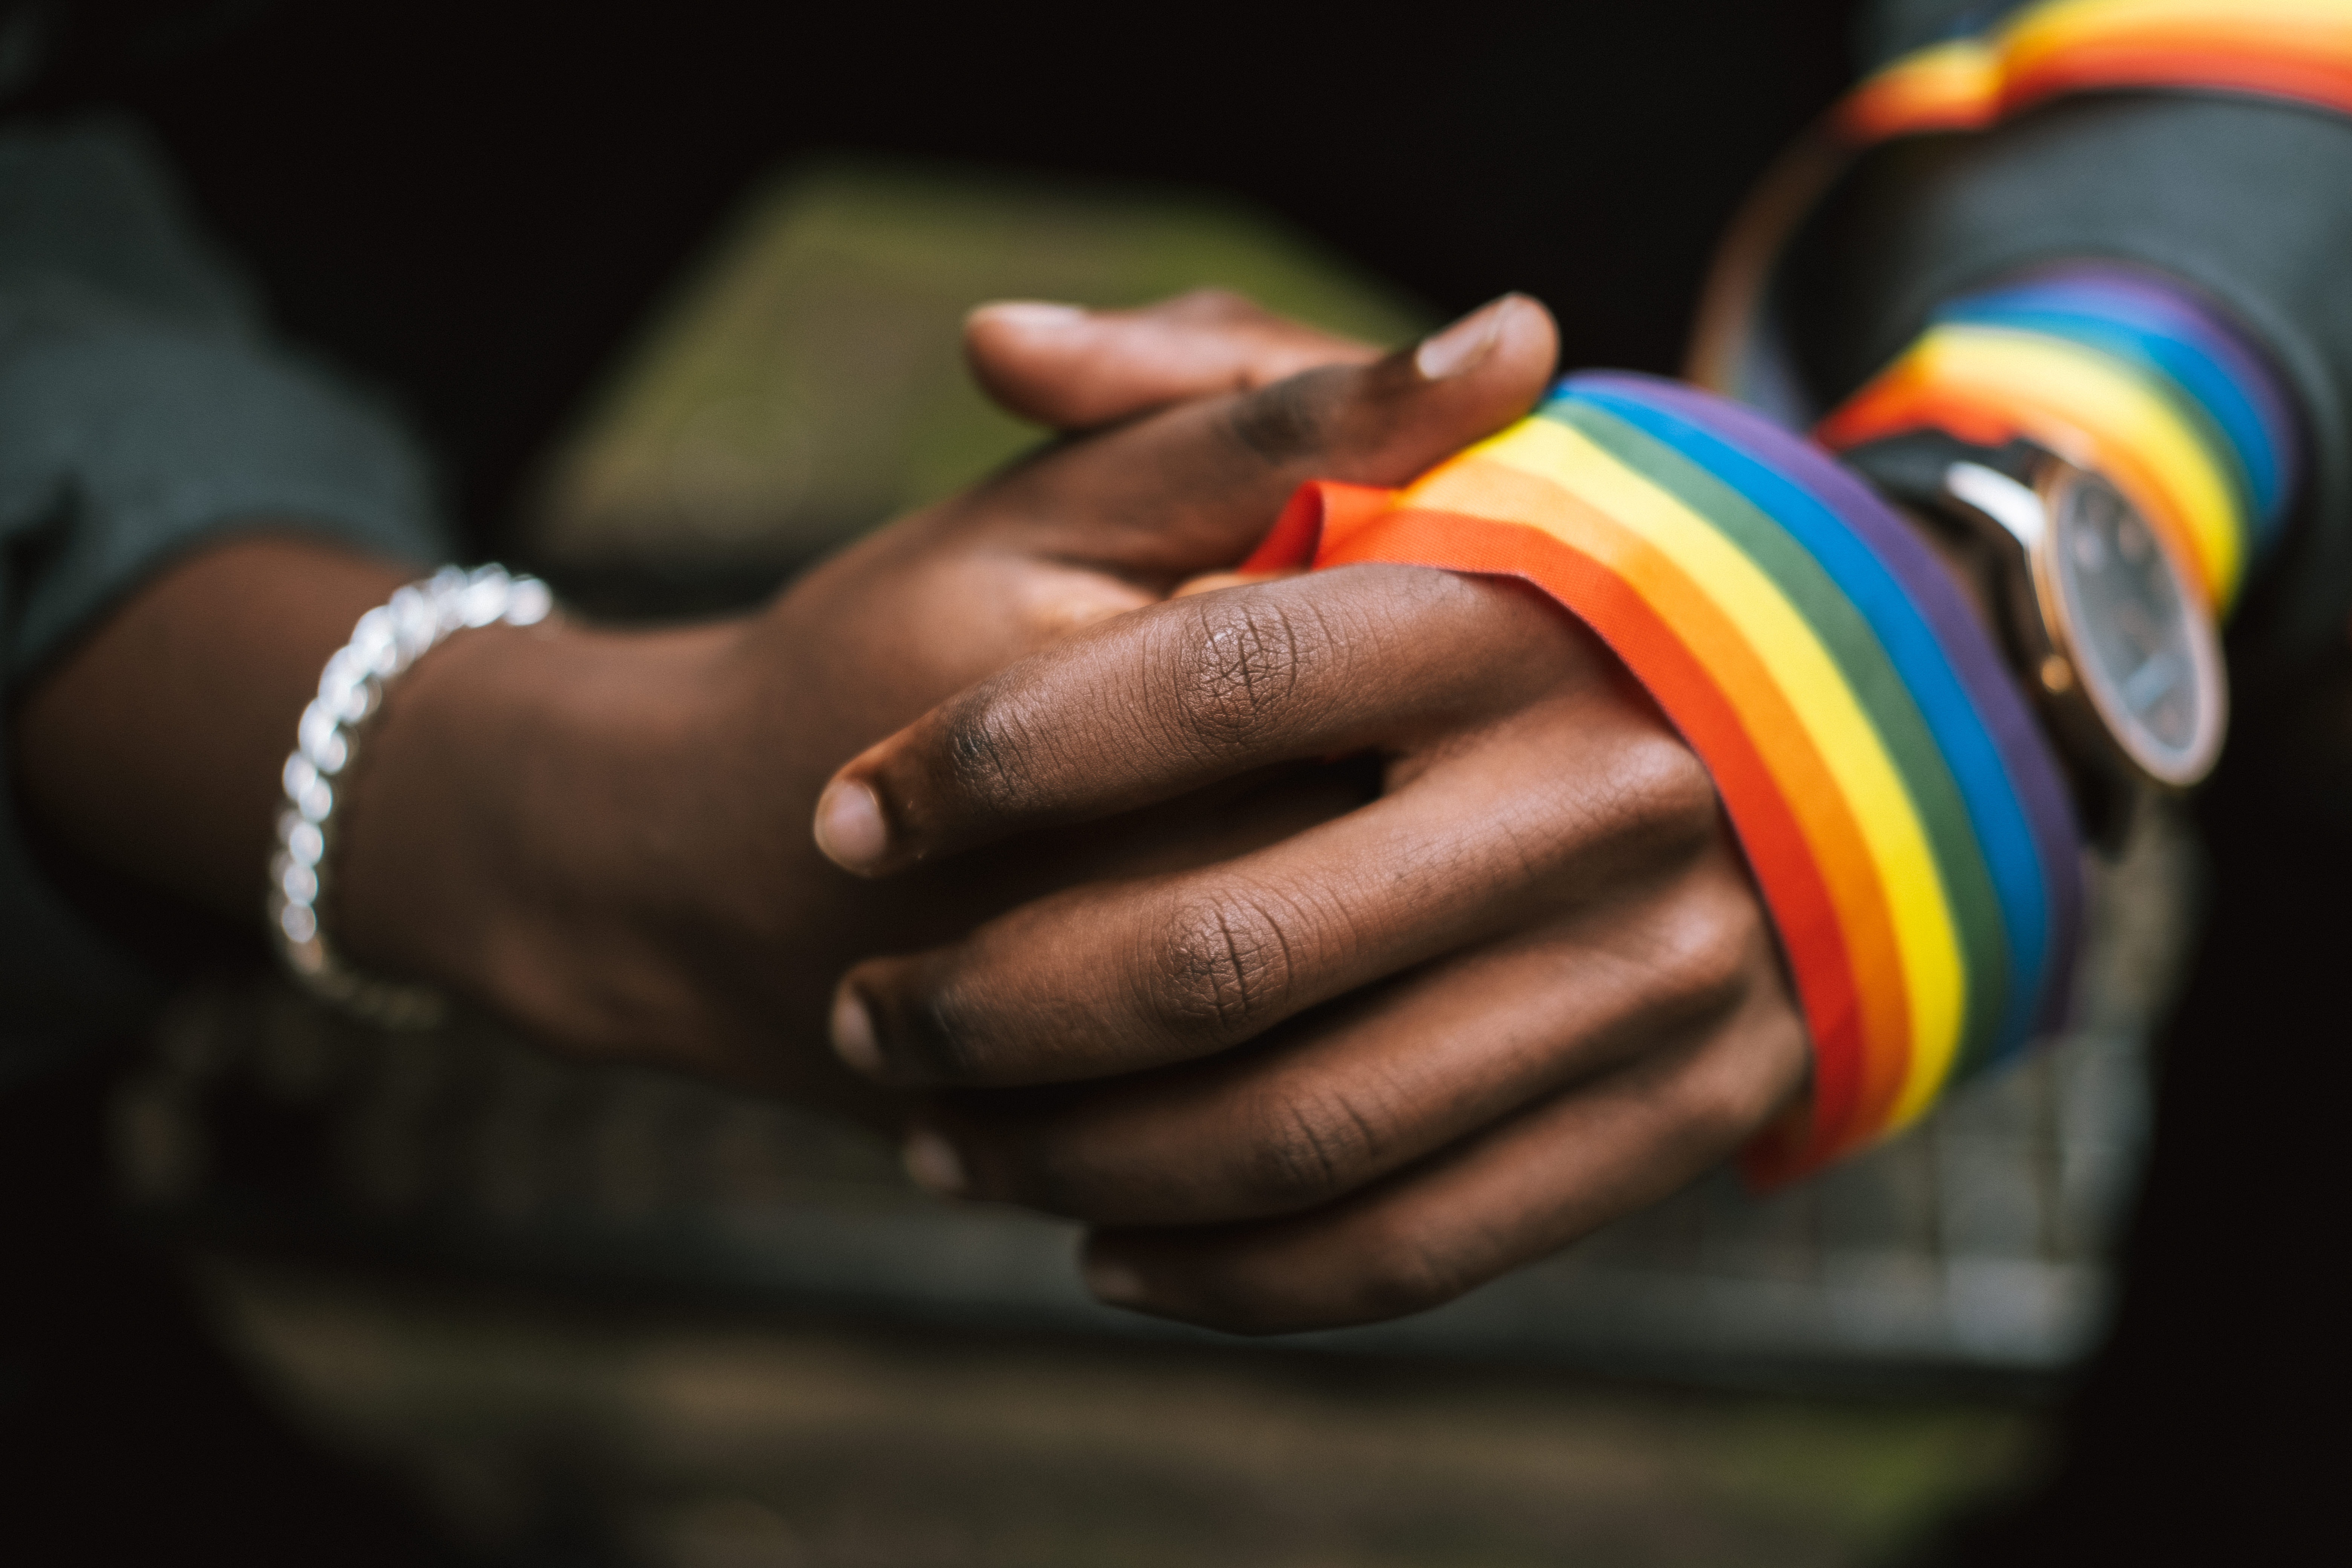 Eine Person trägt regenbogenfarbene LSBTI*-Bänder an ihrer Hand und ihrem Arm. ©GIZ/Anete Lusina (https://www.pexels.com/de-de/foto/mann-strasse-schild-gesichtslos-5721294/)